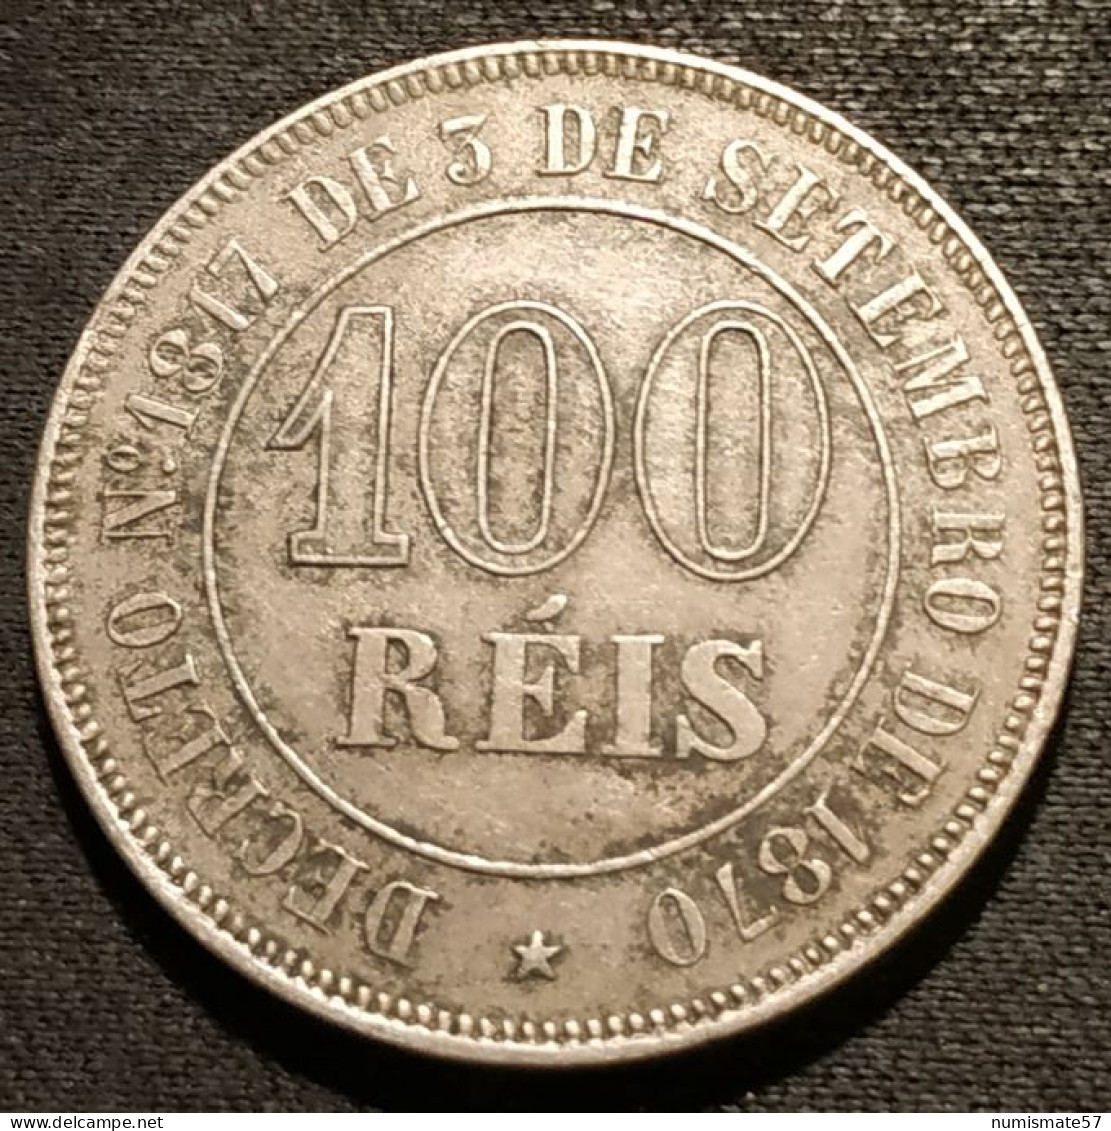 BRESIL - 100 REIS 1871 - Pedro II - KM 477 - Brasil - Brazil - Brazilië